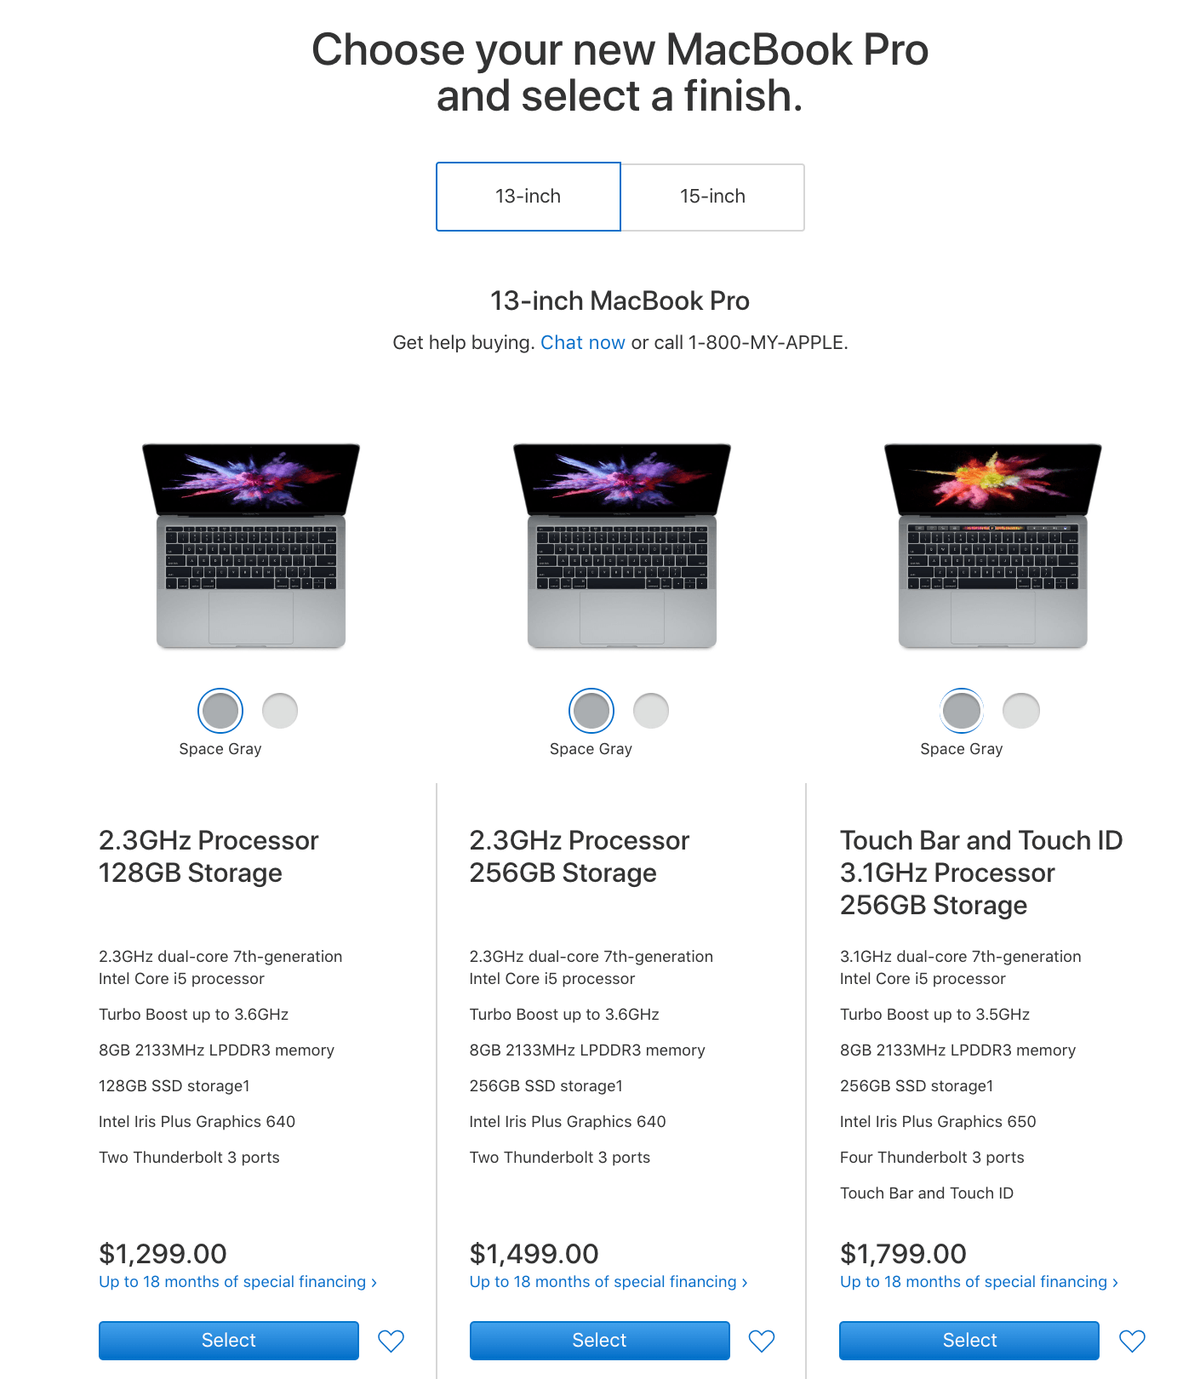 Cross-sell pre Macbook Pro